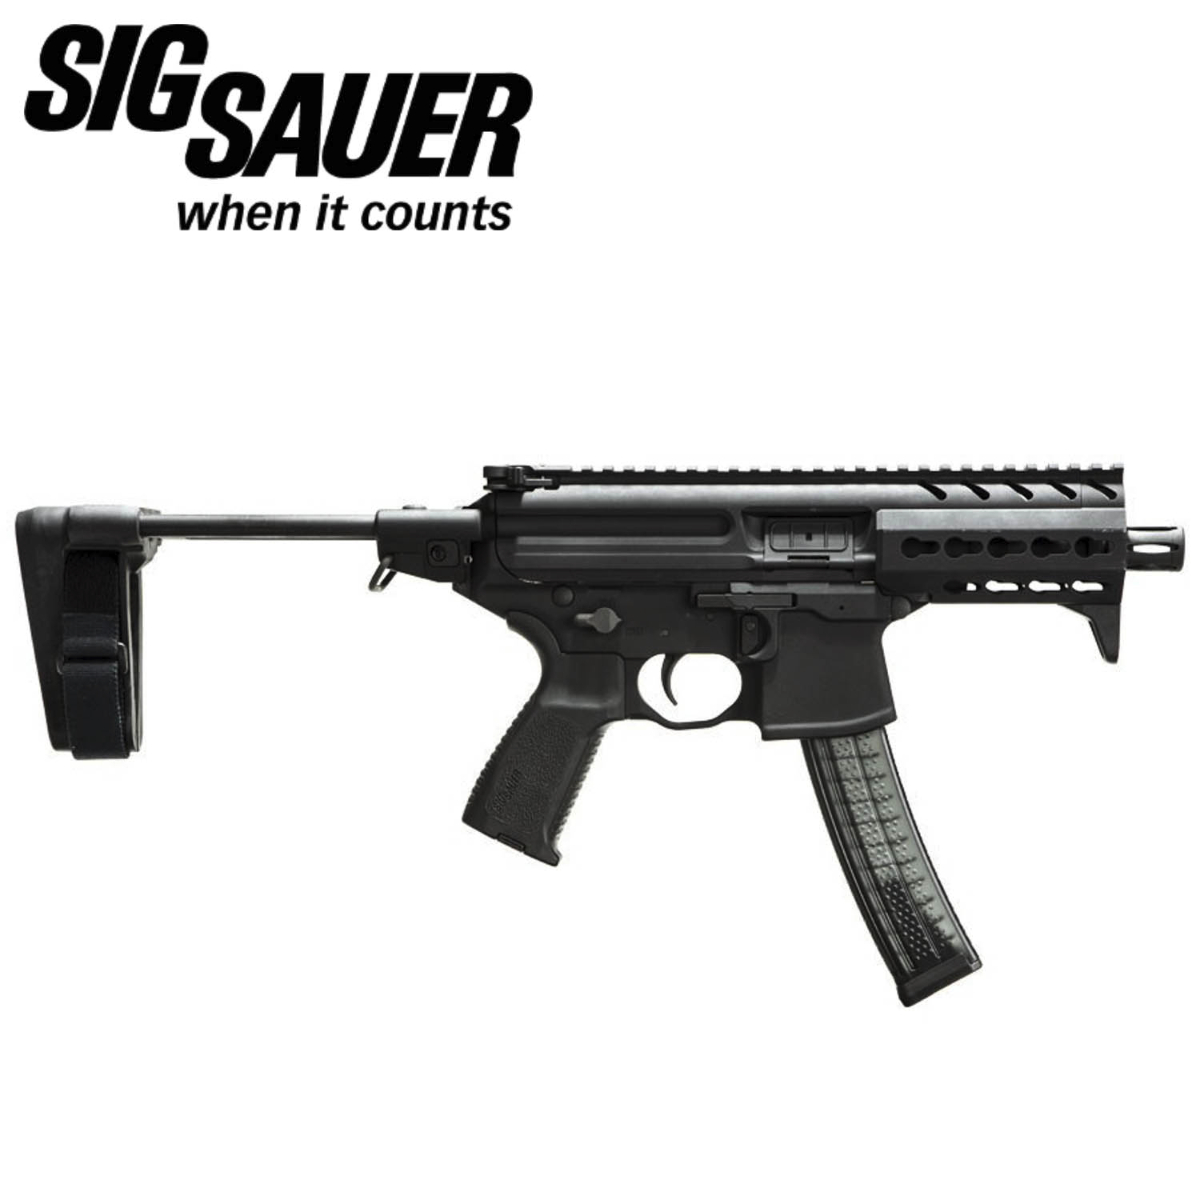 Brand New Sig Sauer Mpx Gen2 9mm Submachine Gun 4 6 Inch Barrel 30